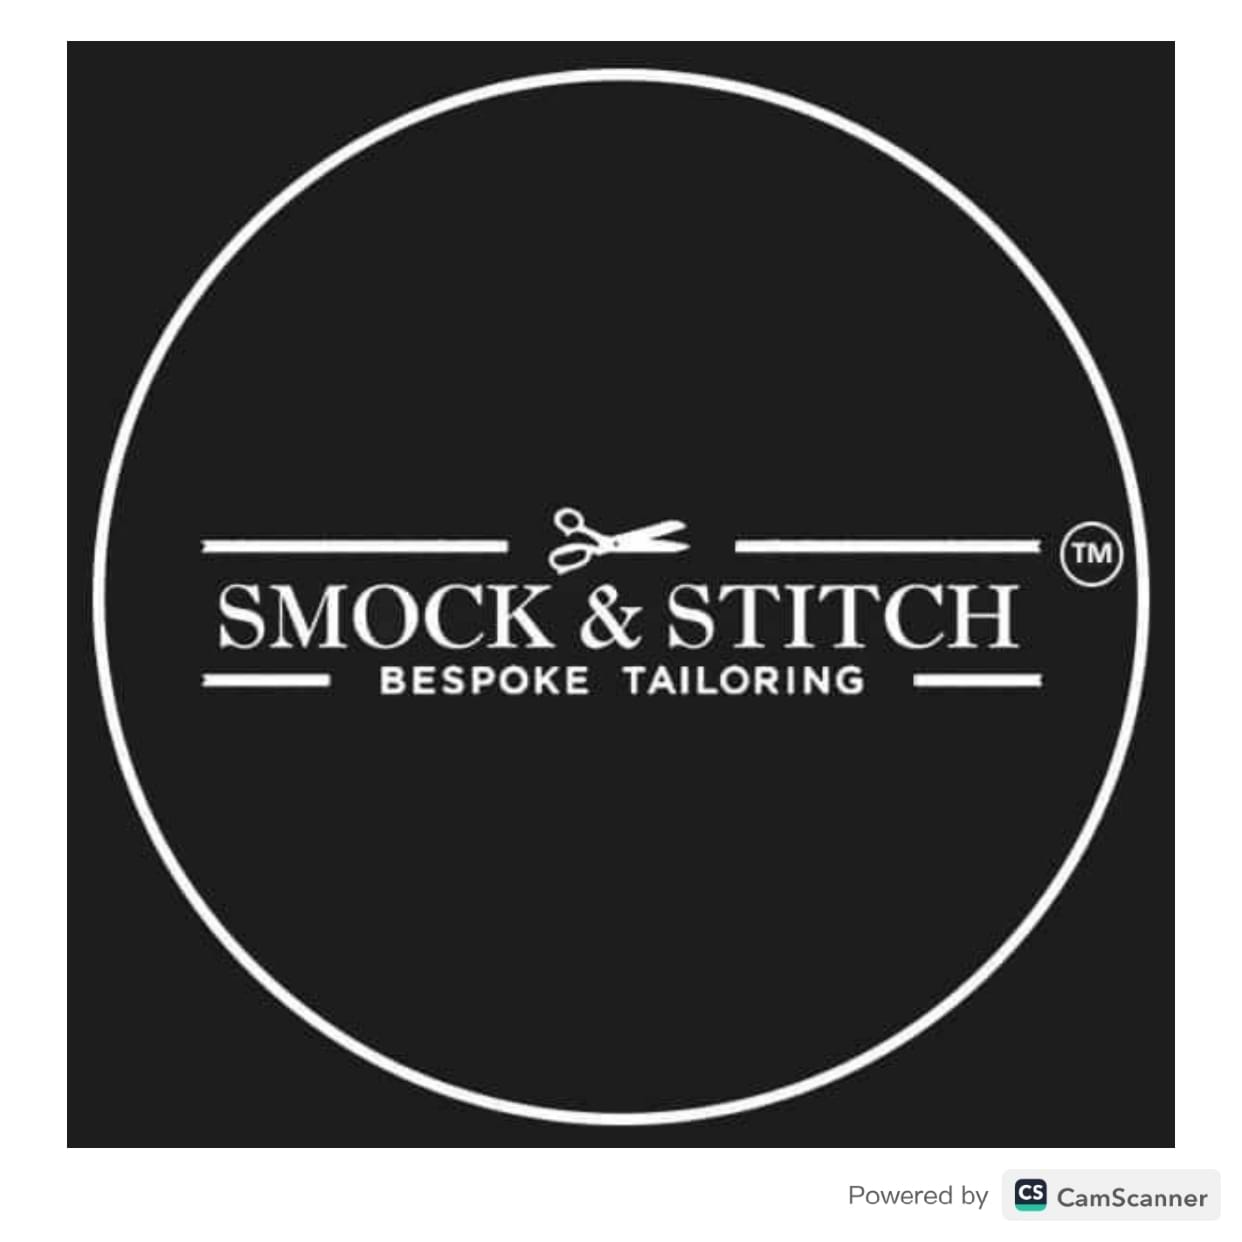 Smock & Stitch